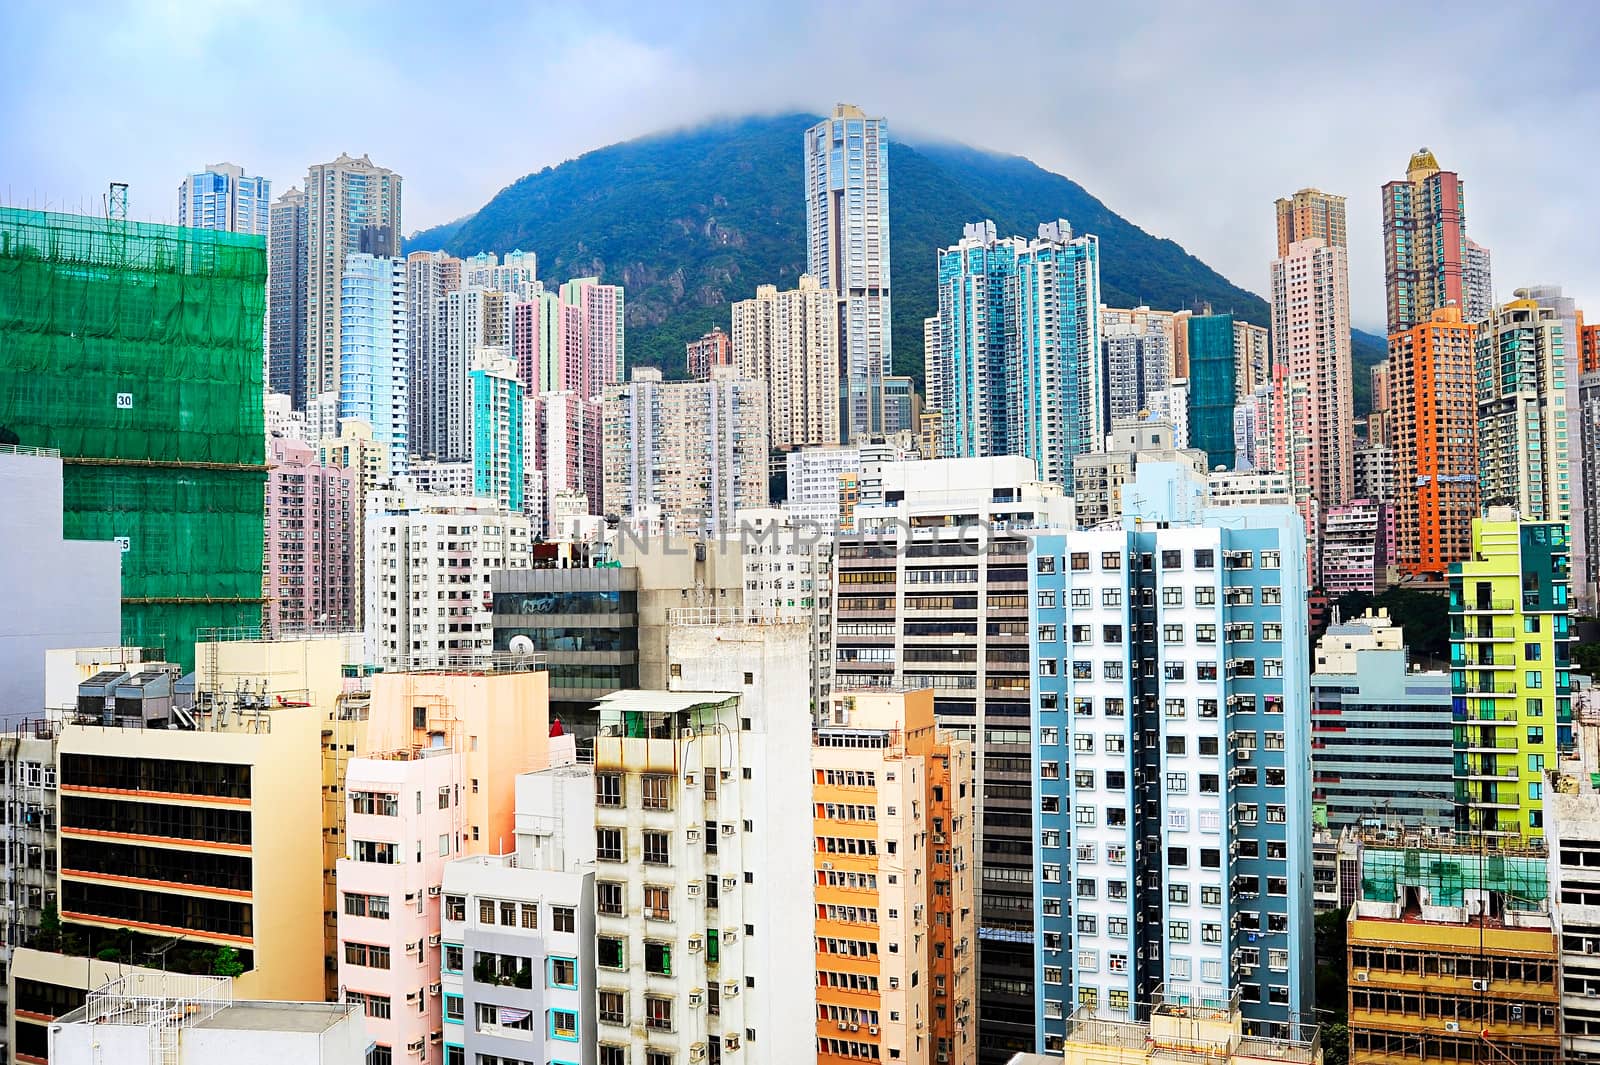 Density Hong Kong by joyfull